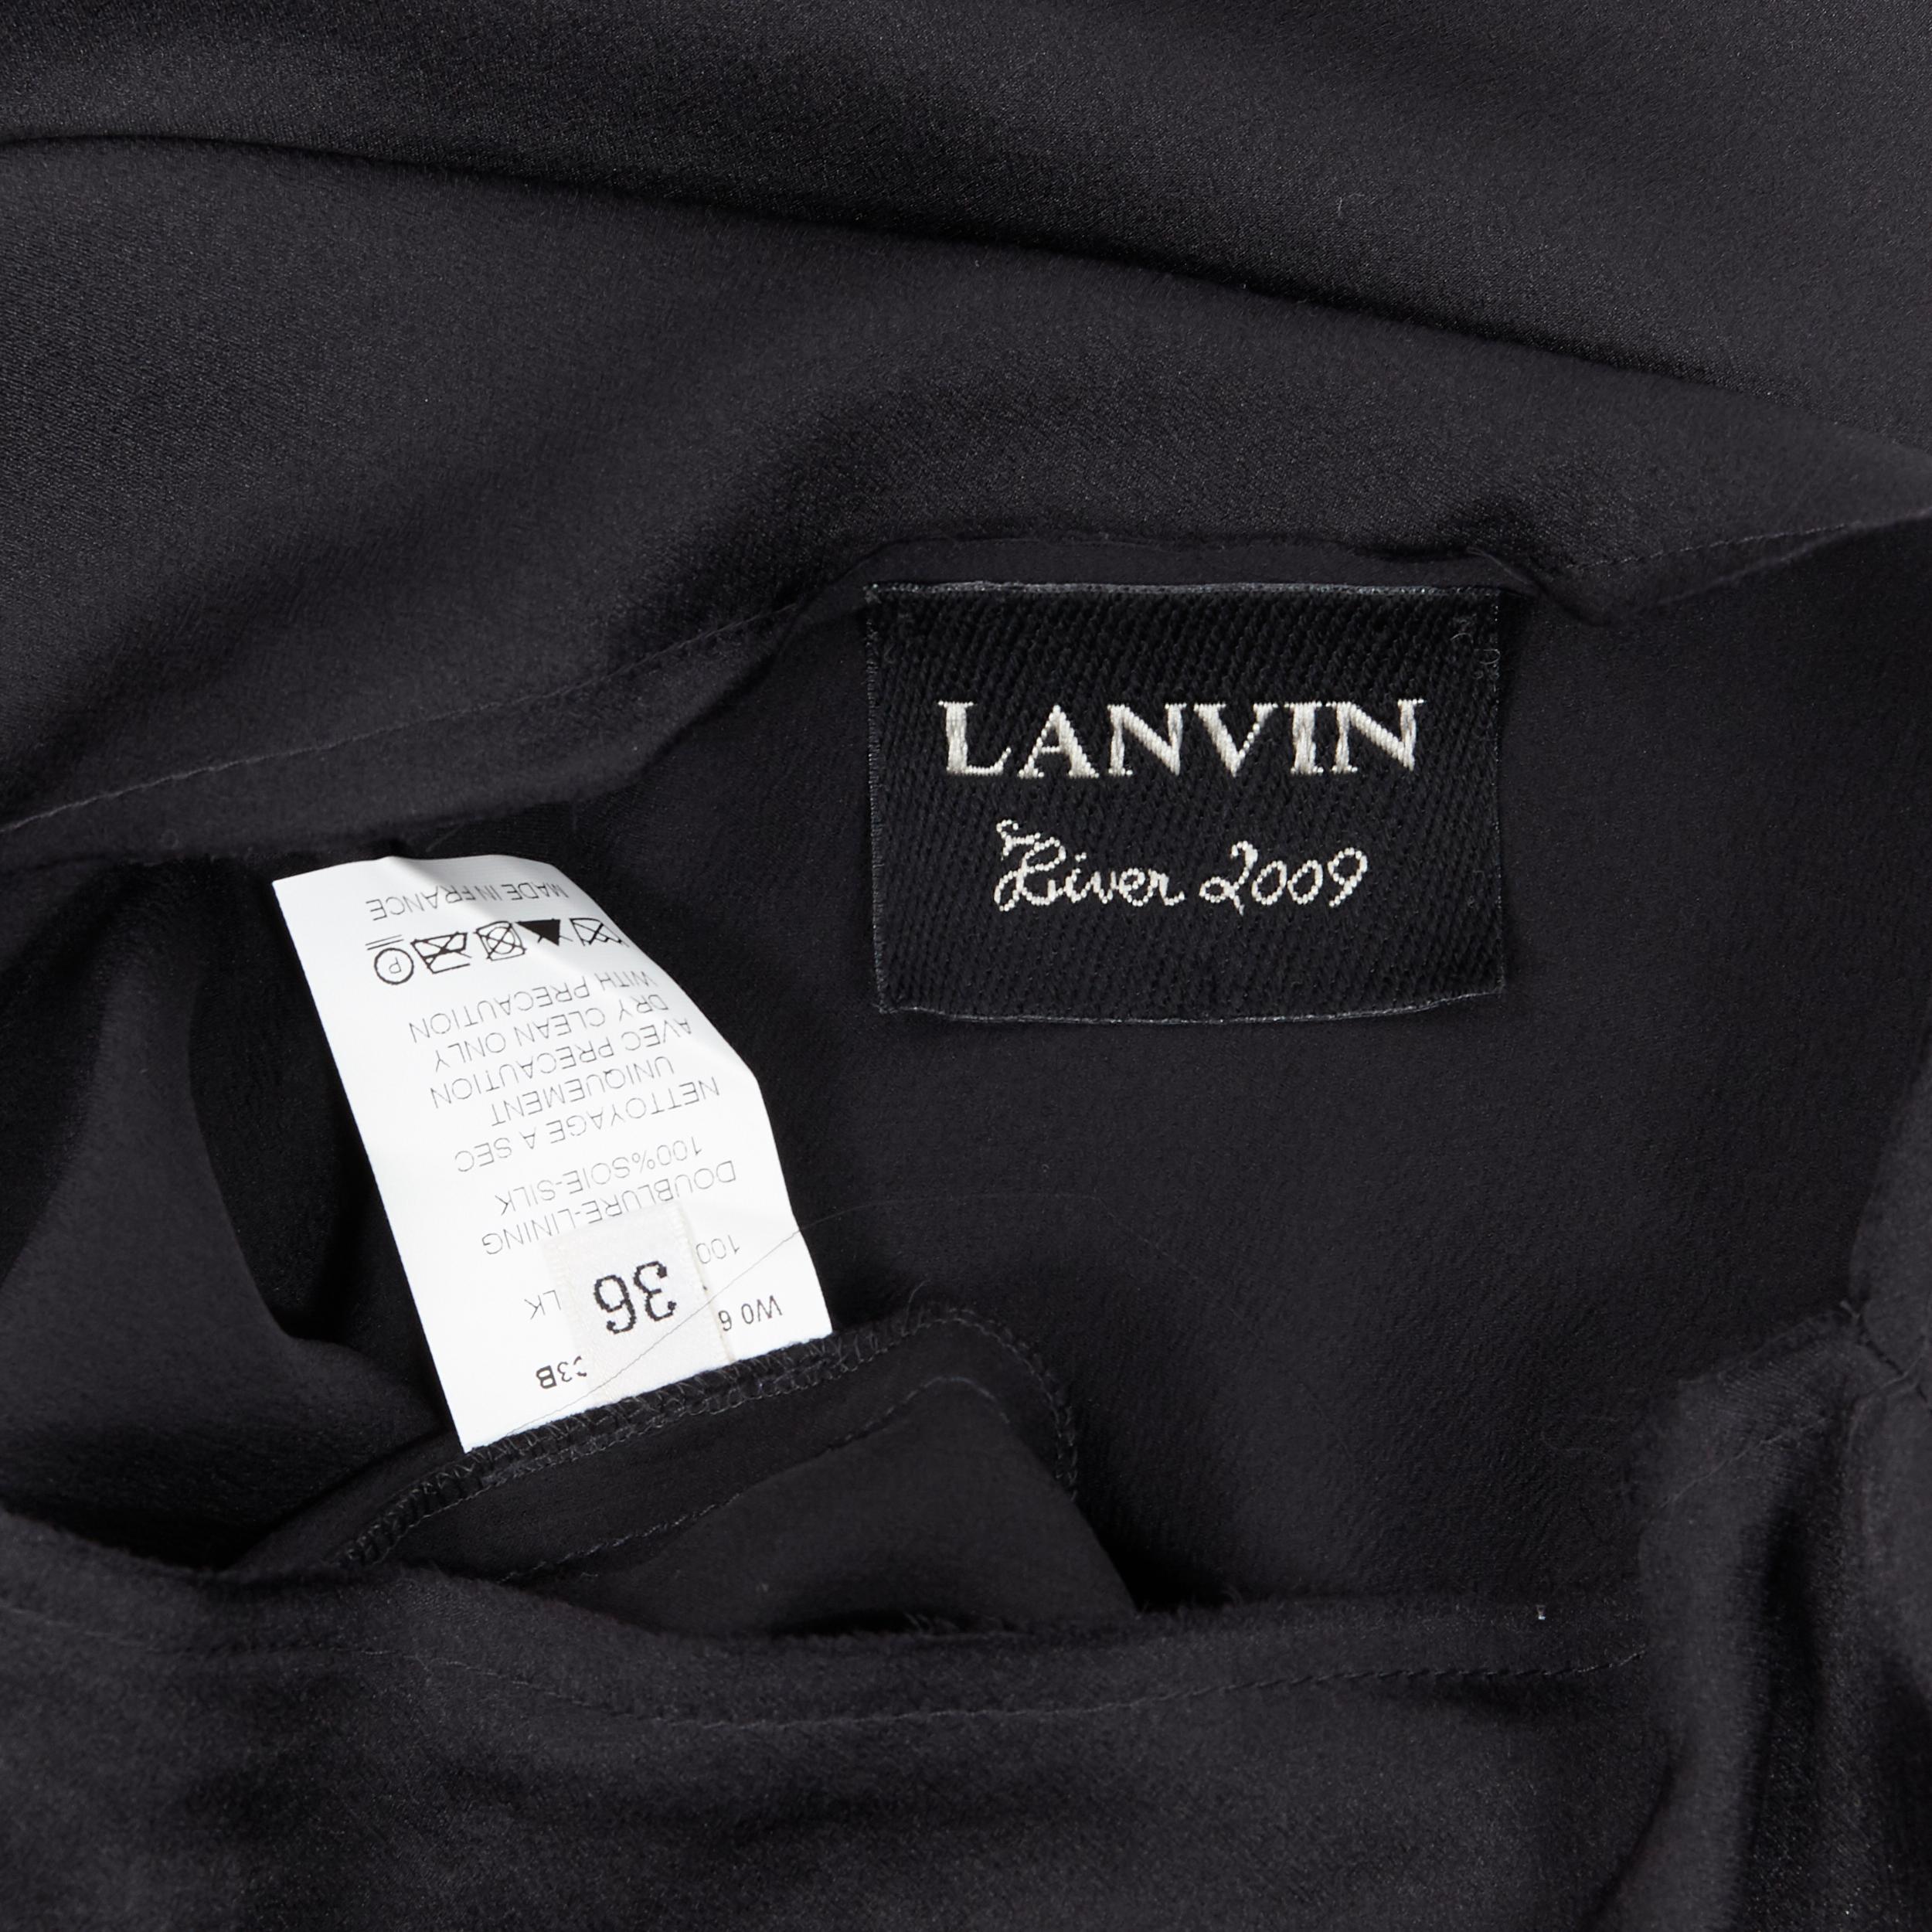 LANVIN Elbaz 2009 black silk lurex gold cut out design cap sleeve top FR36 XS 4